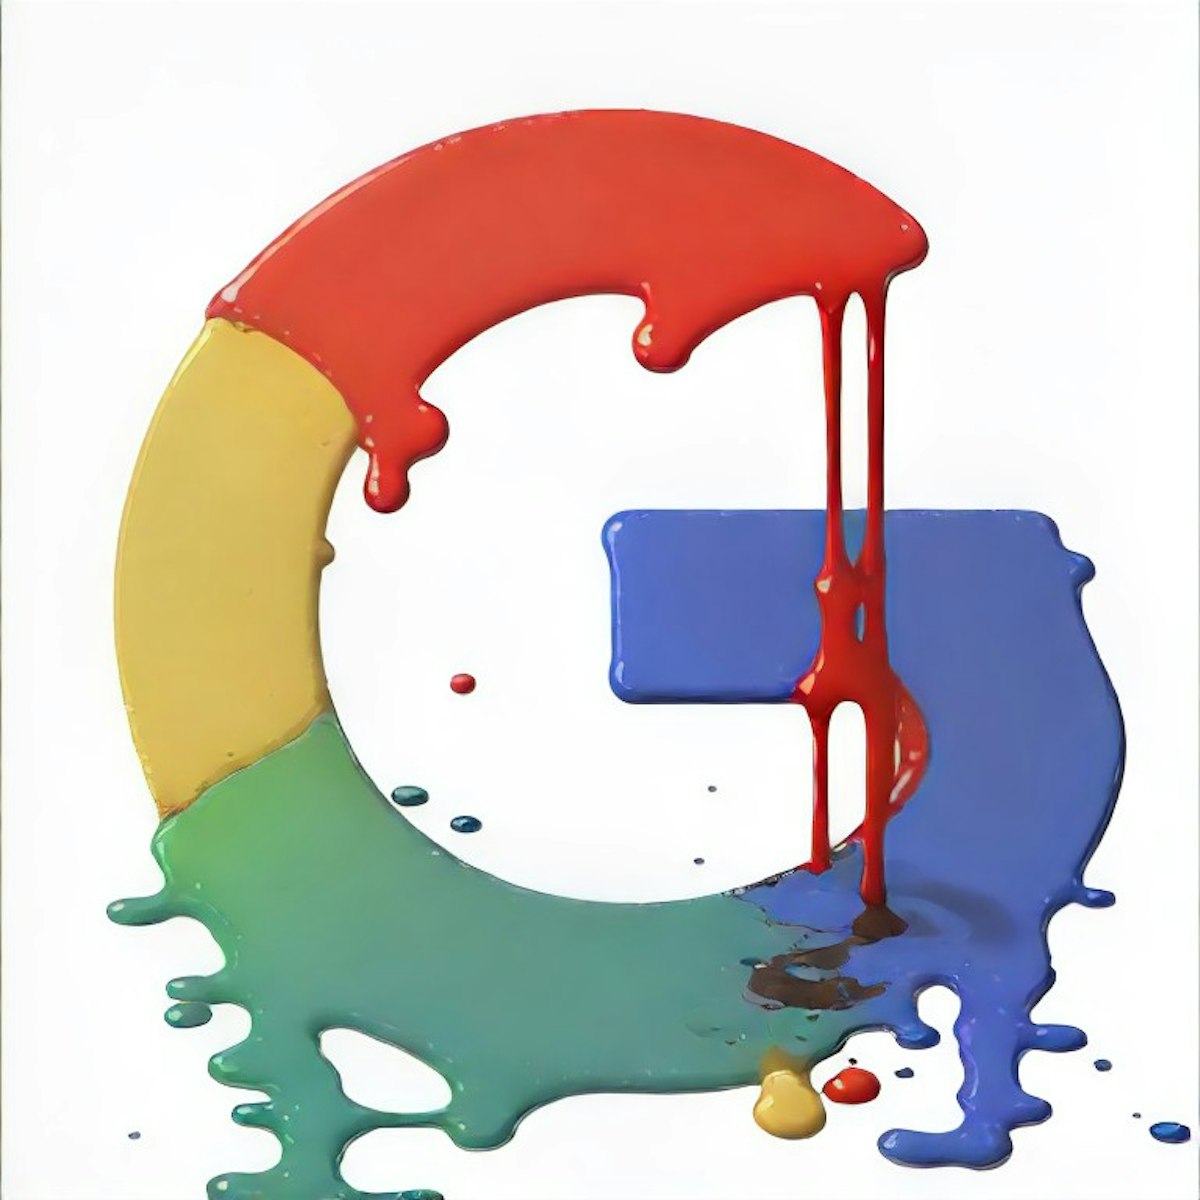 featured image - Tại sao Google tệ: Nhưng chúng tôi đang mắc kẹt với họ (Hiện tại)